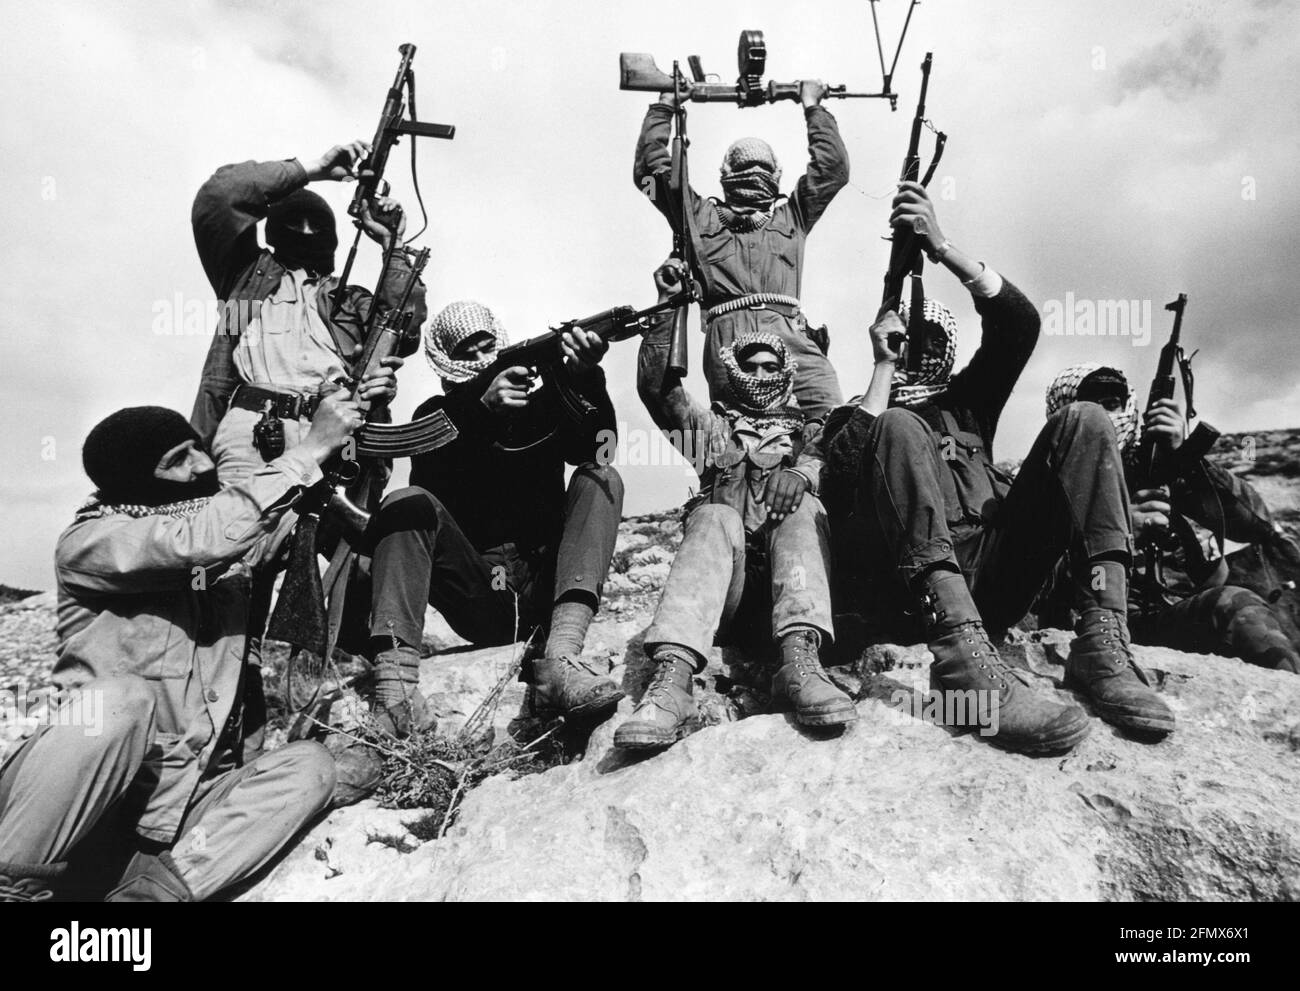 Militari, Palestina, guerriglieri palestinesi con fucili automatici sovietici AK-47 Kalashnikov, Libano, DIRITTI-AGGIUNTIVI-CLEARANCE-INFO-NON-DISPONIBILE Foto Stock